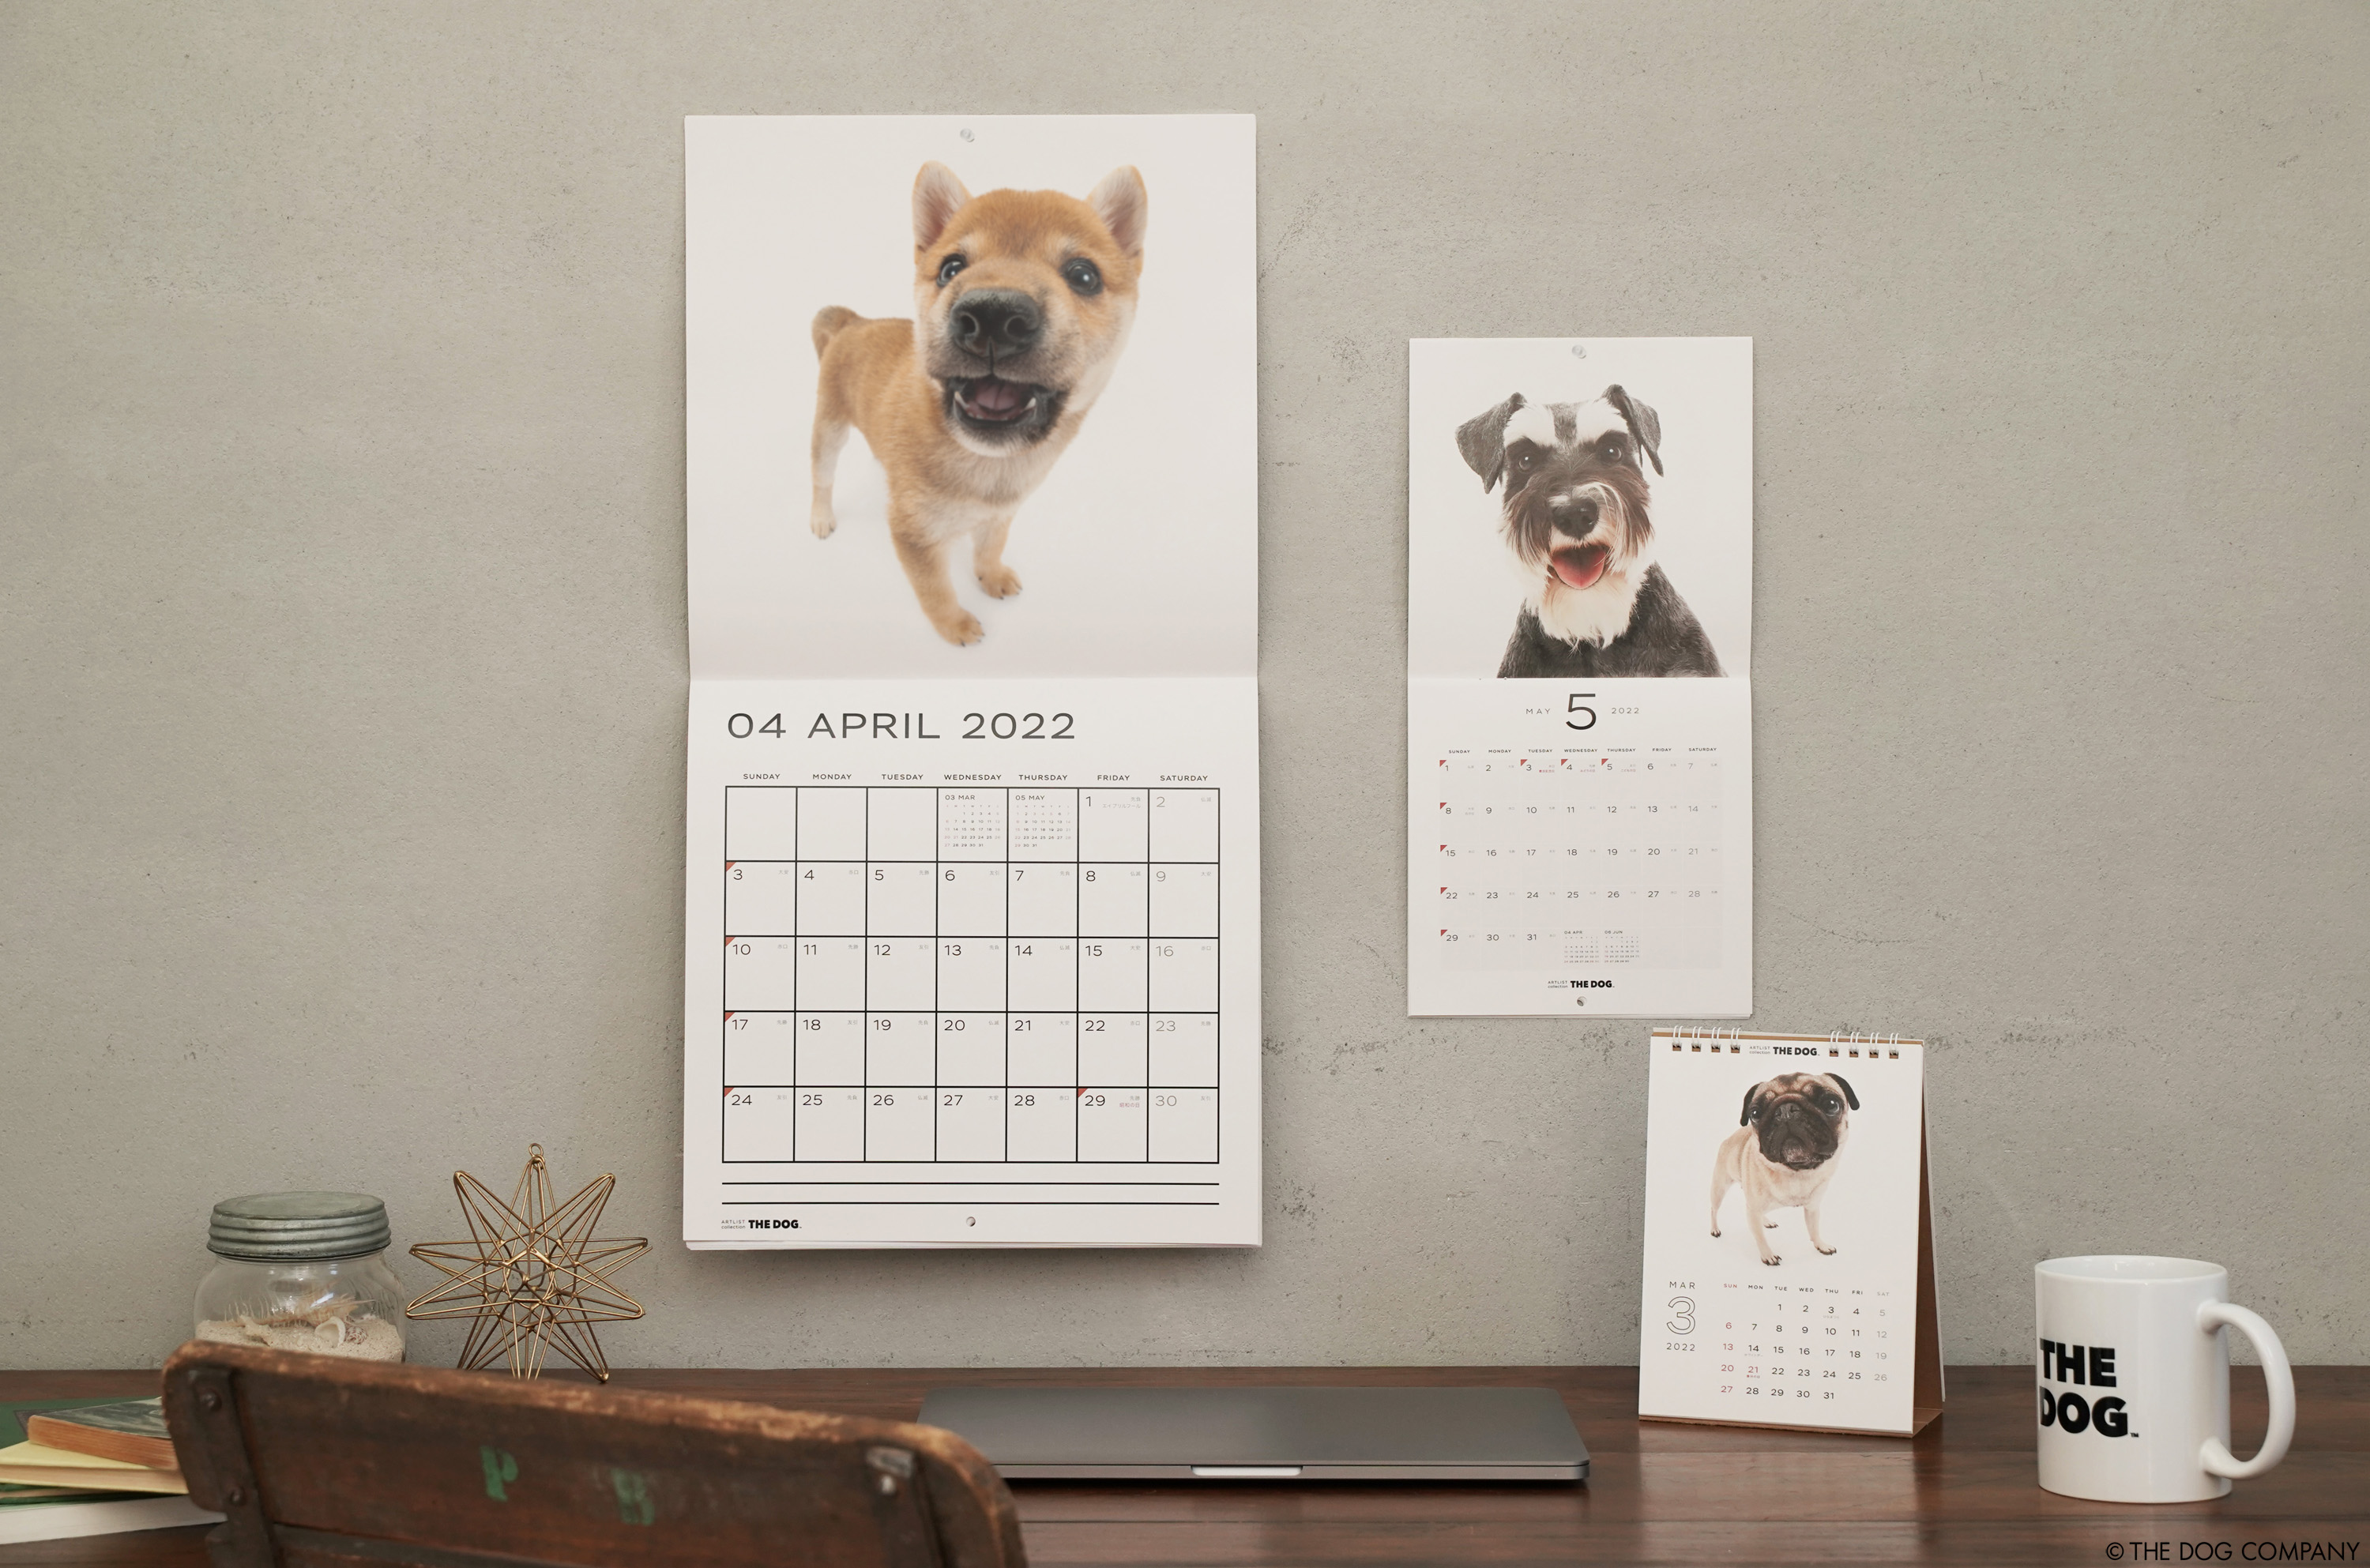 20年の歴史を持つロングセラー商品 THE DOG カレンダーが2022年版からサスティナブルに生まれ変わりました｜THE DOG  COMPANYのプレスリリース